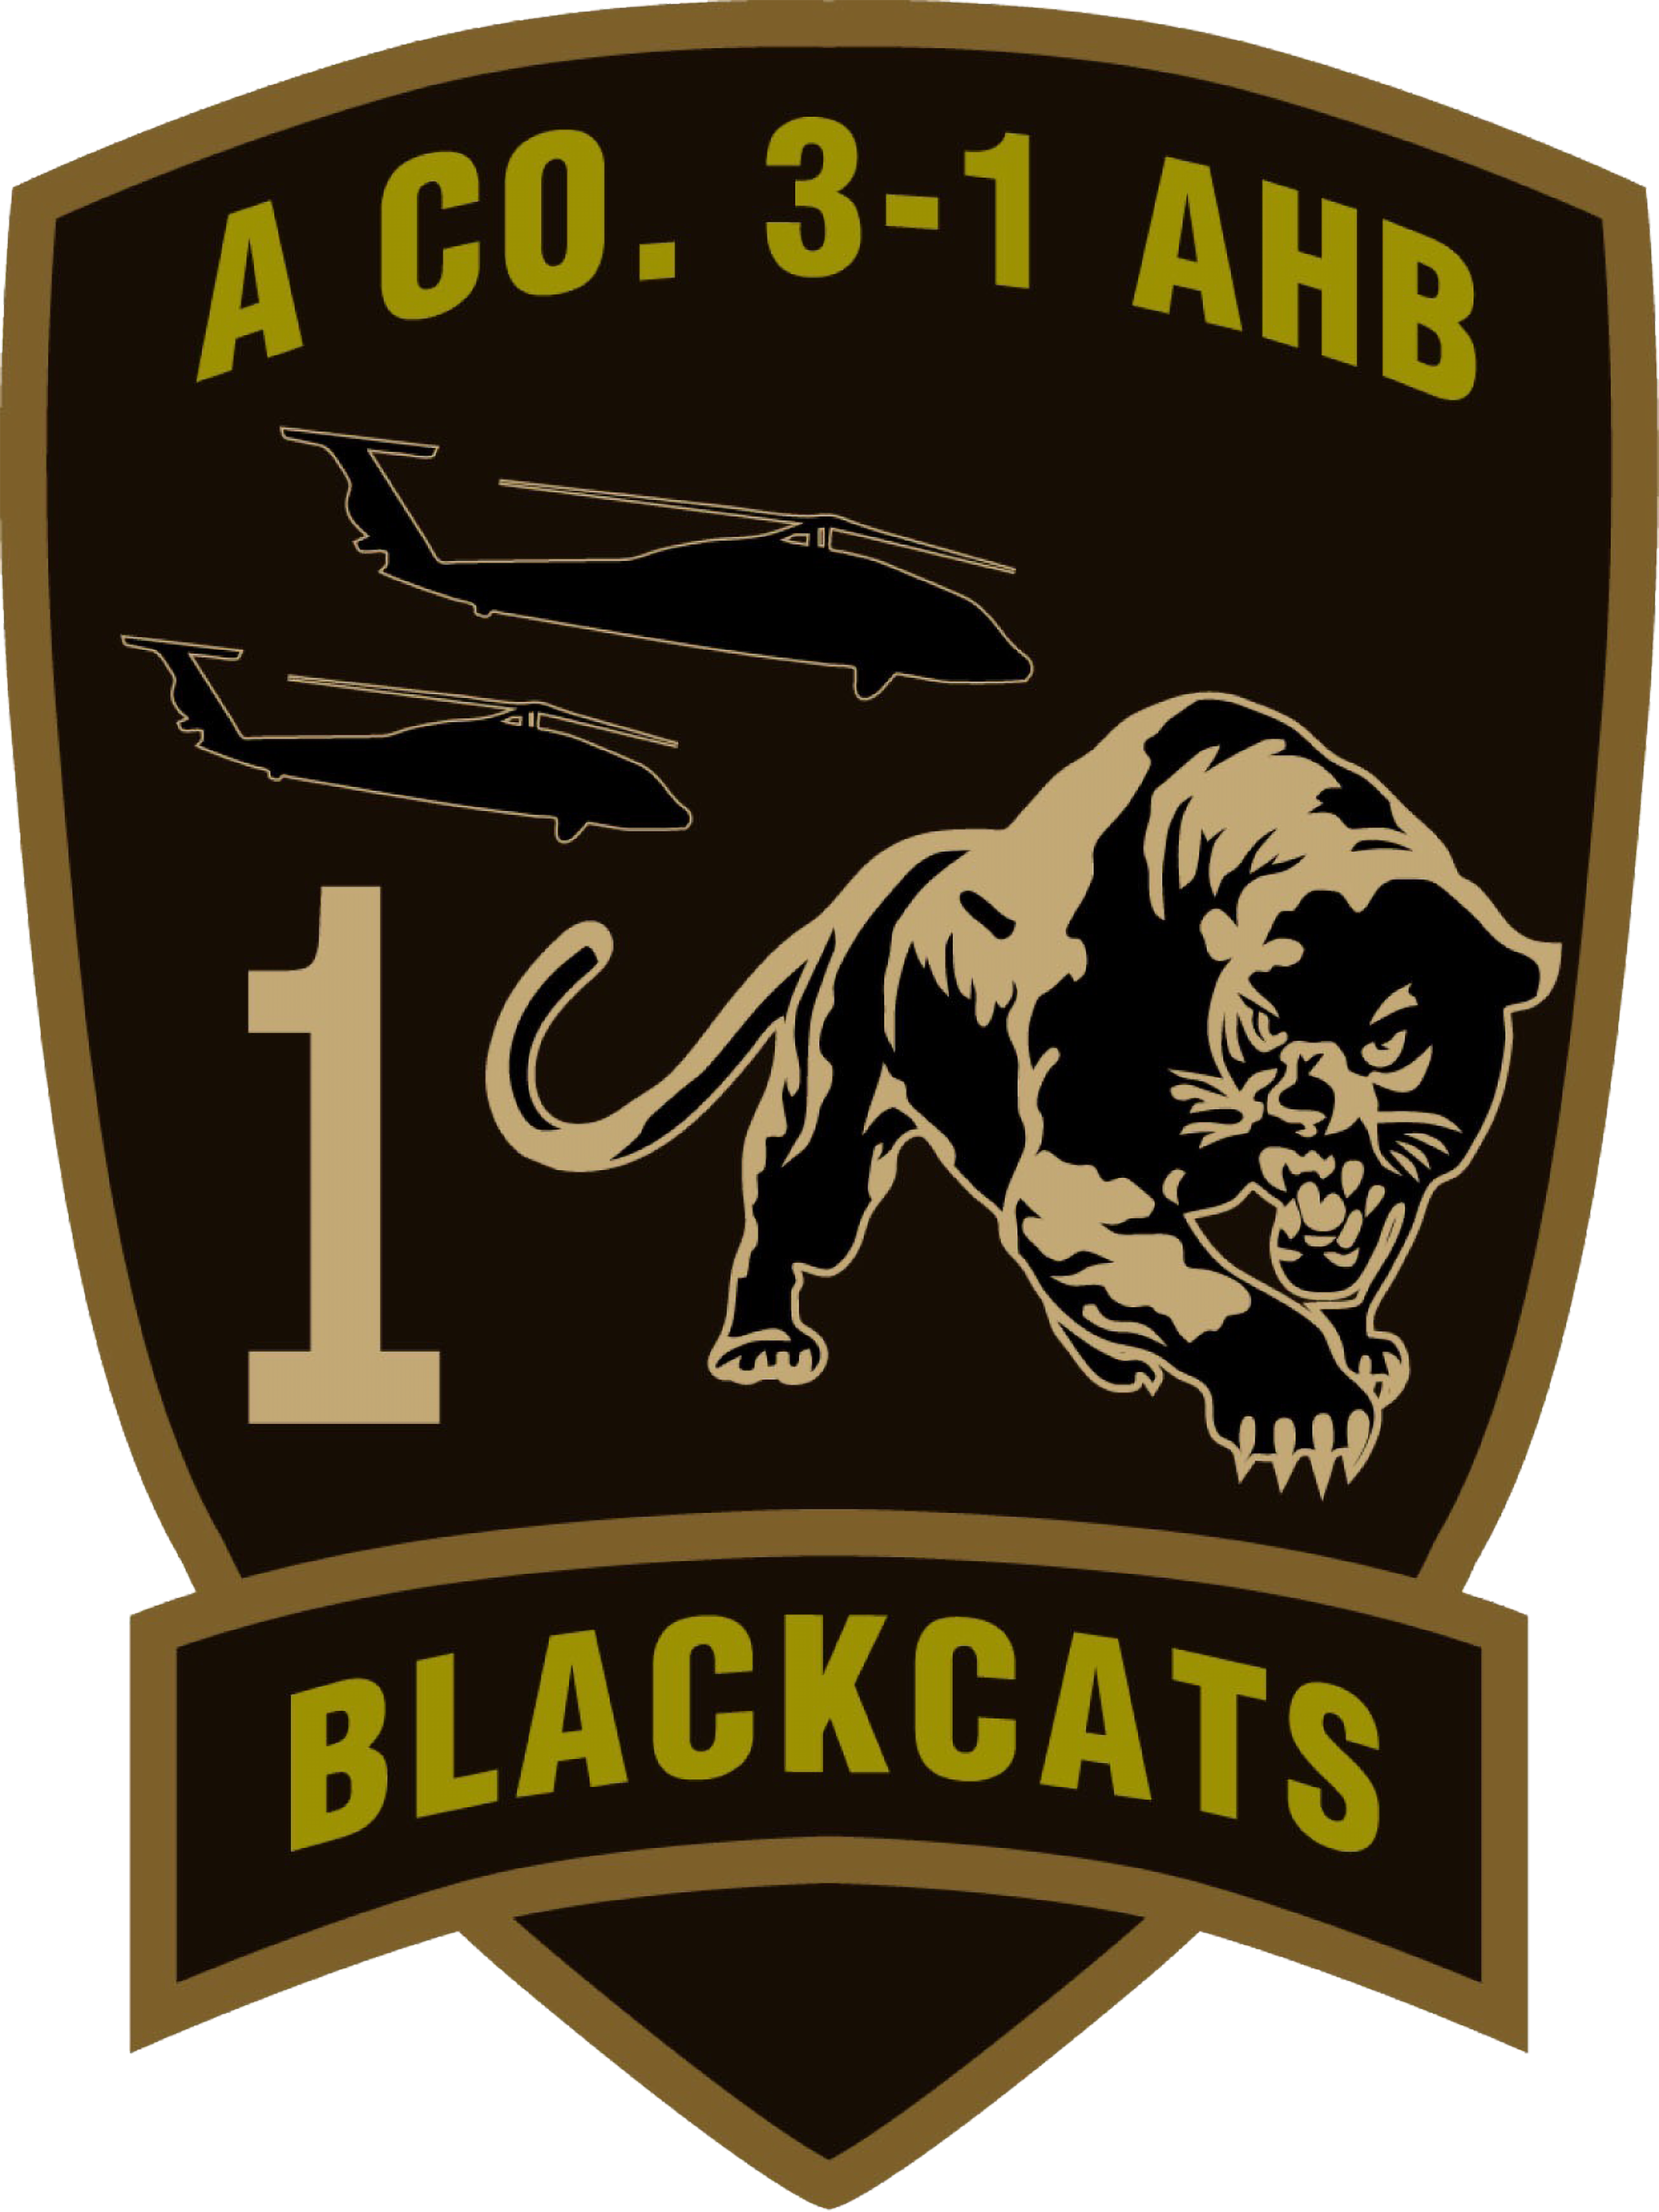 A Co, 3-1 AHB "Blackcats"